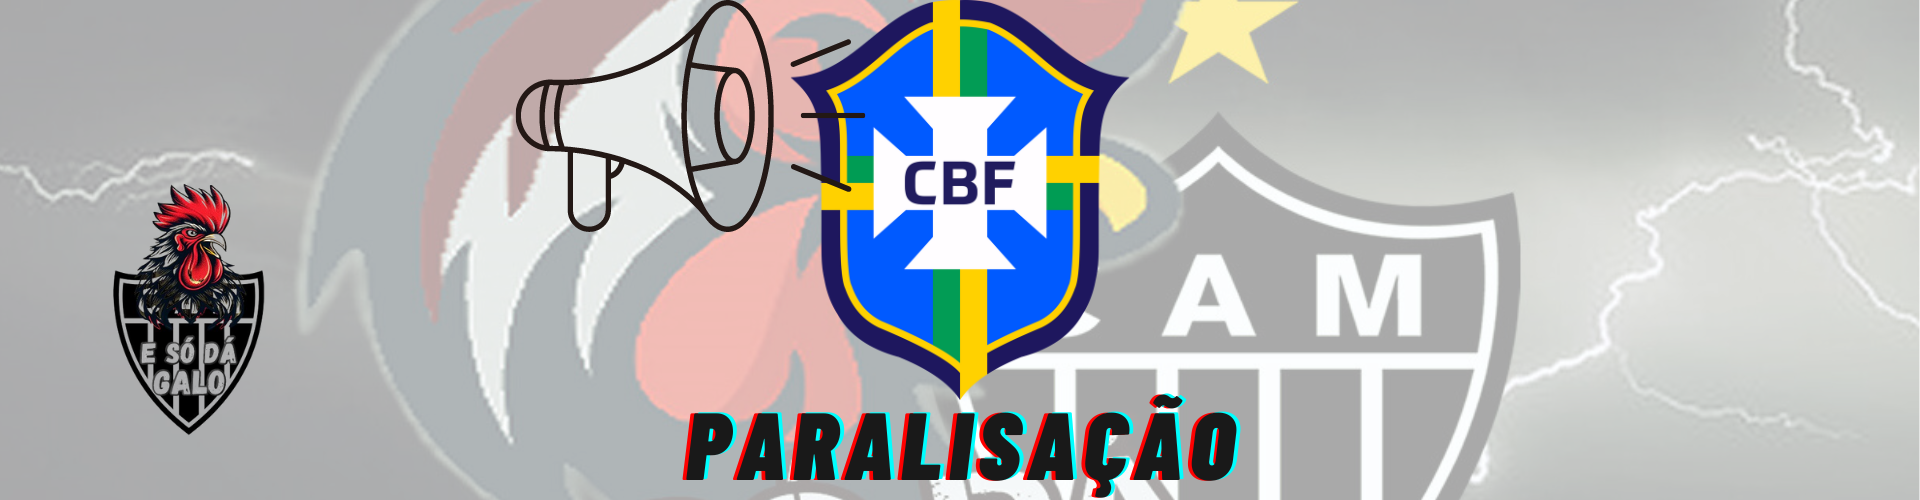 CBF paralisa Campeonato Brasileiro por duas rodadas